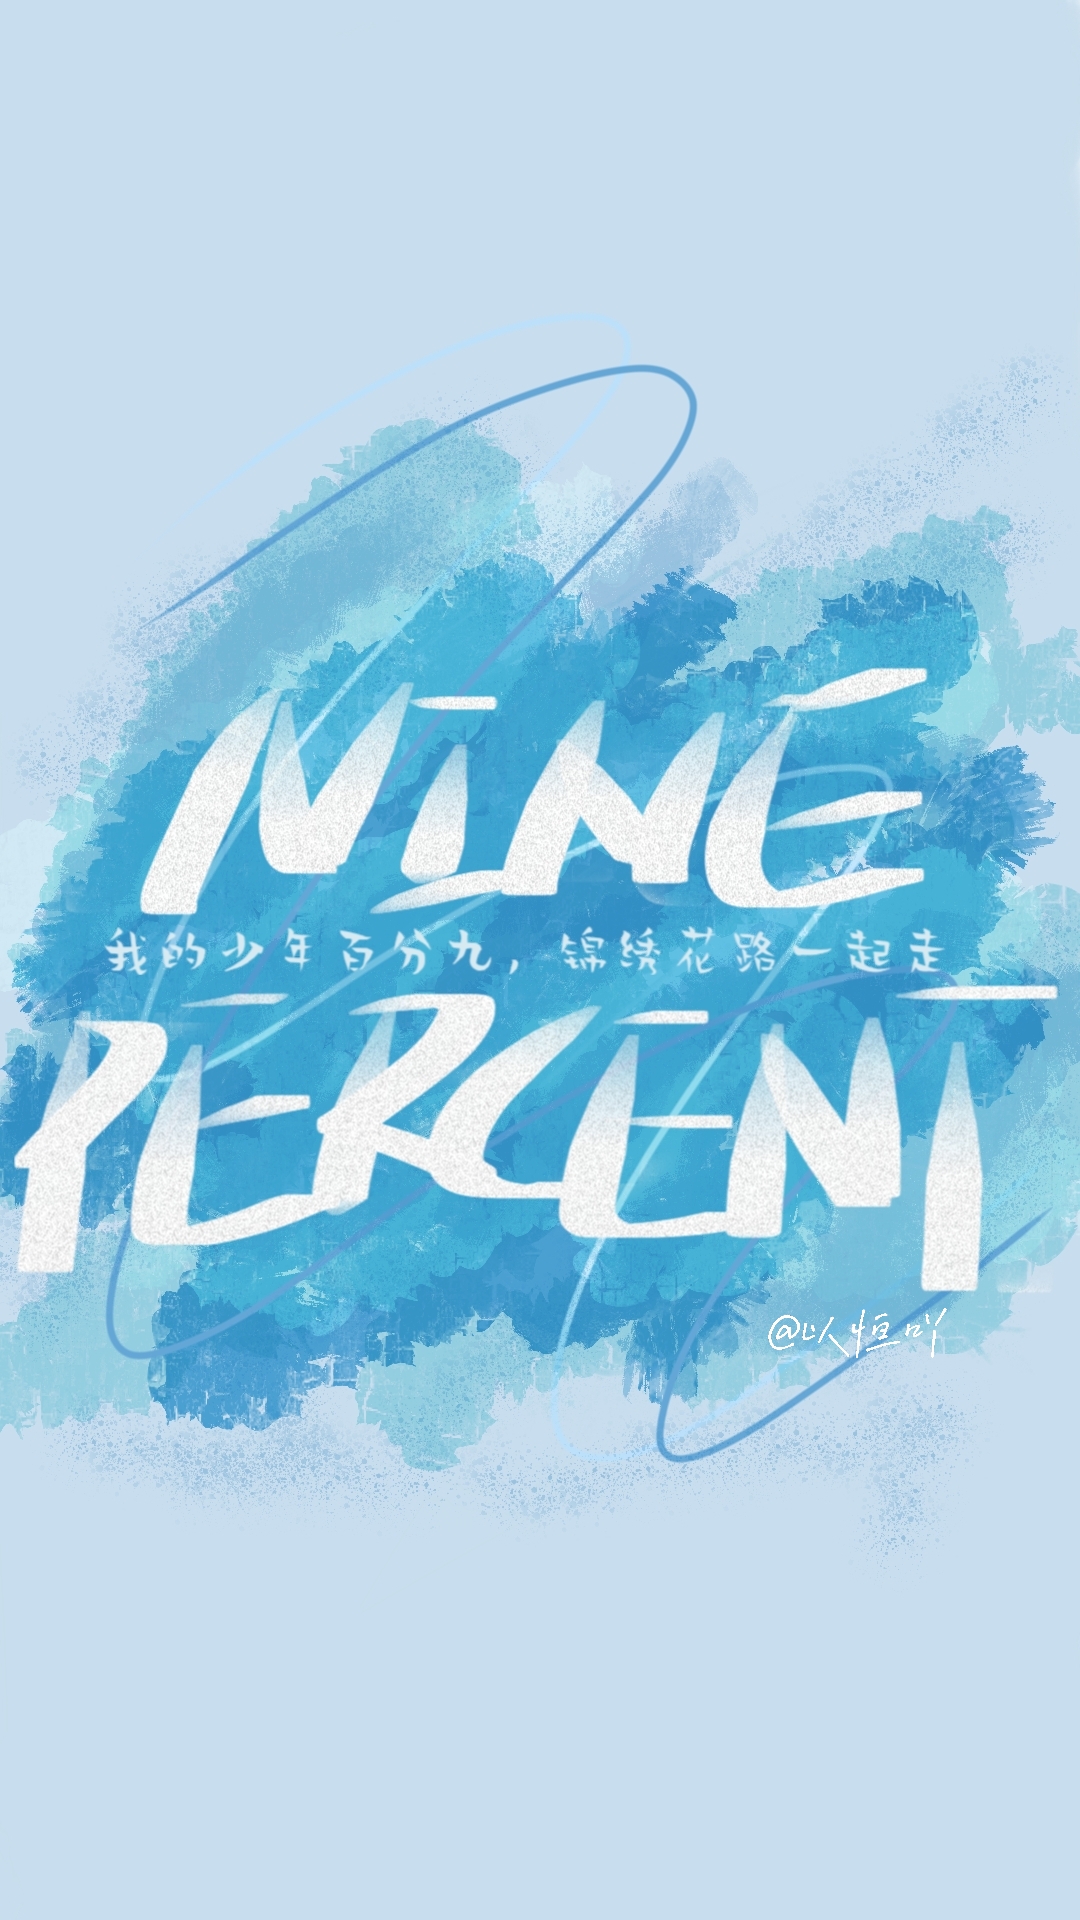 ninepercent字体图片图片